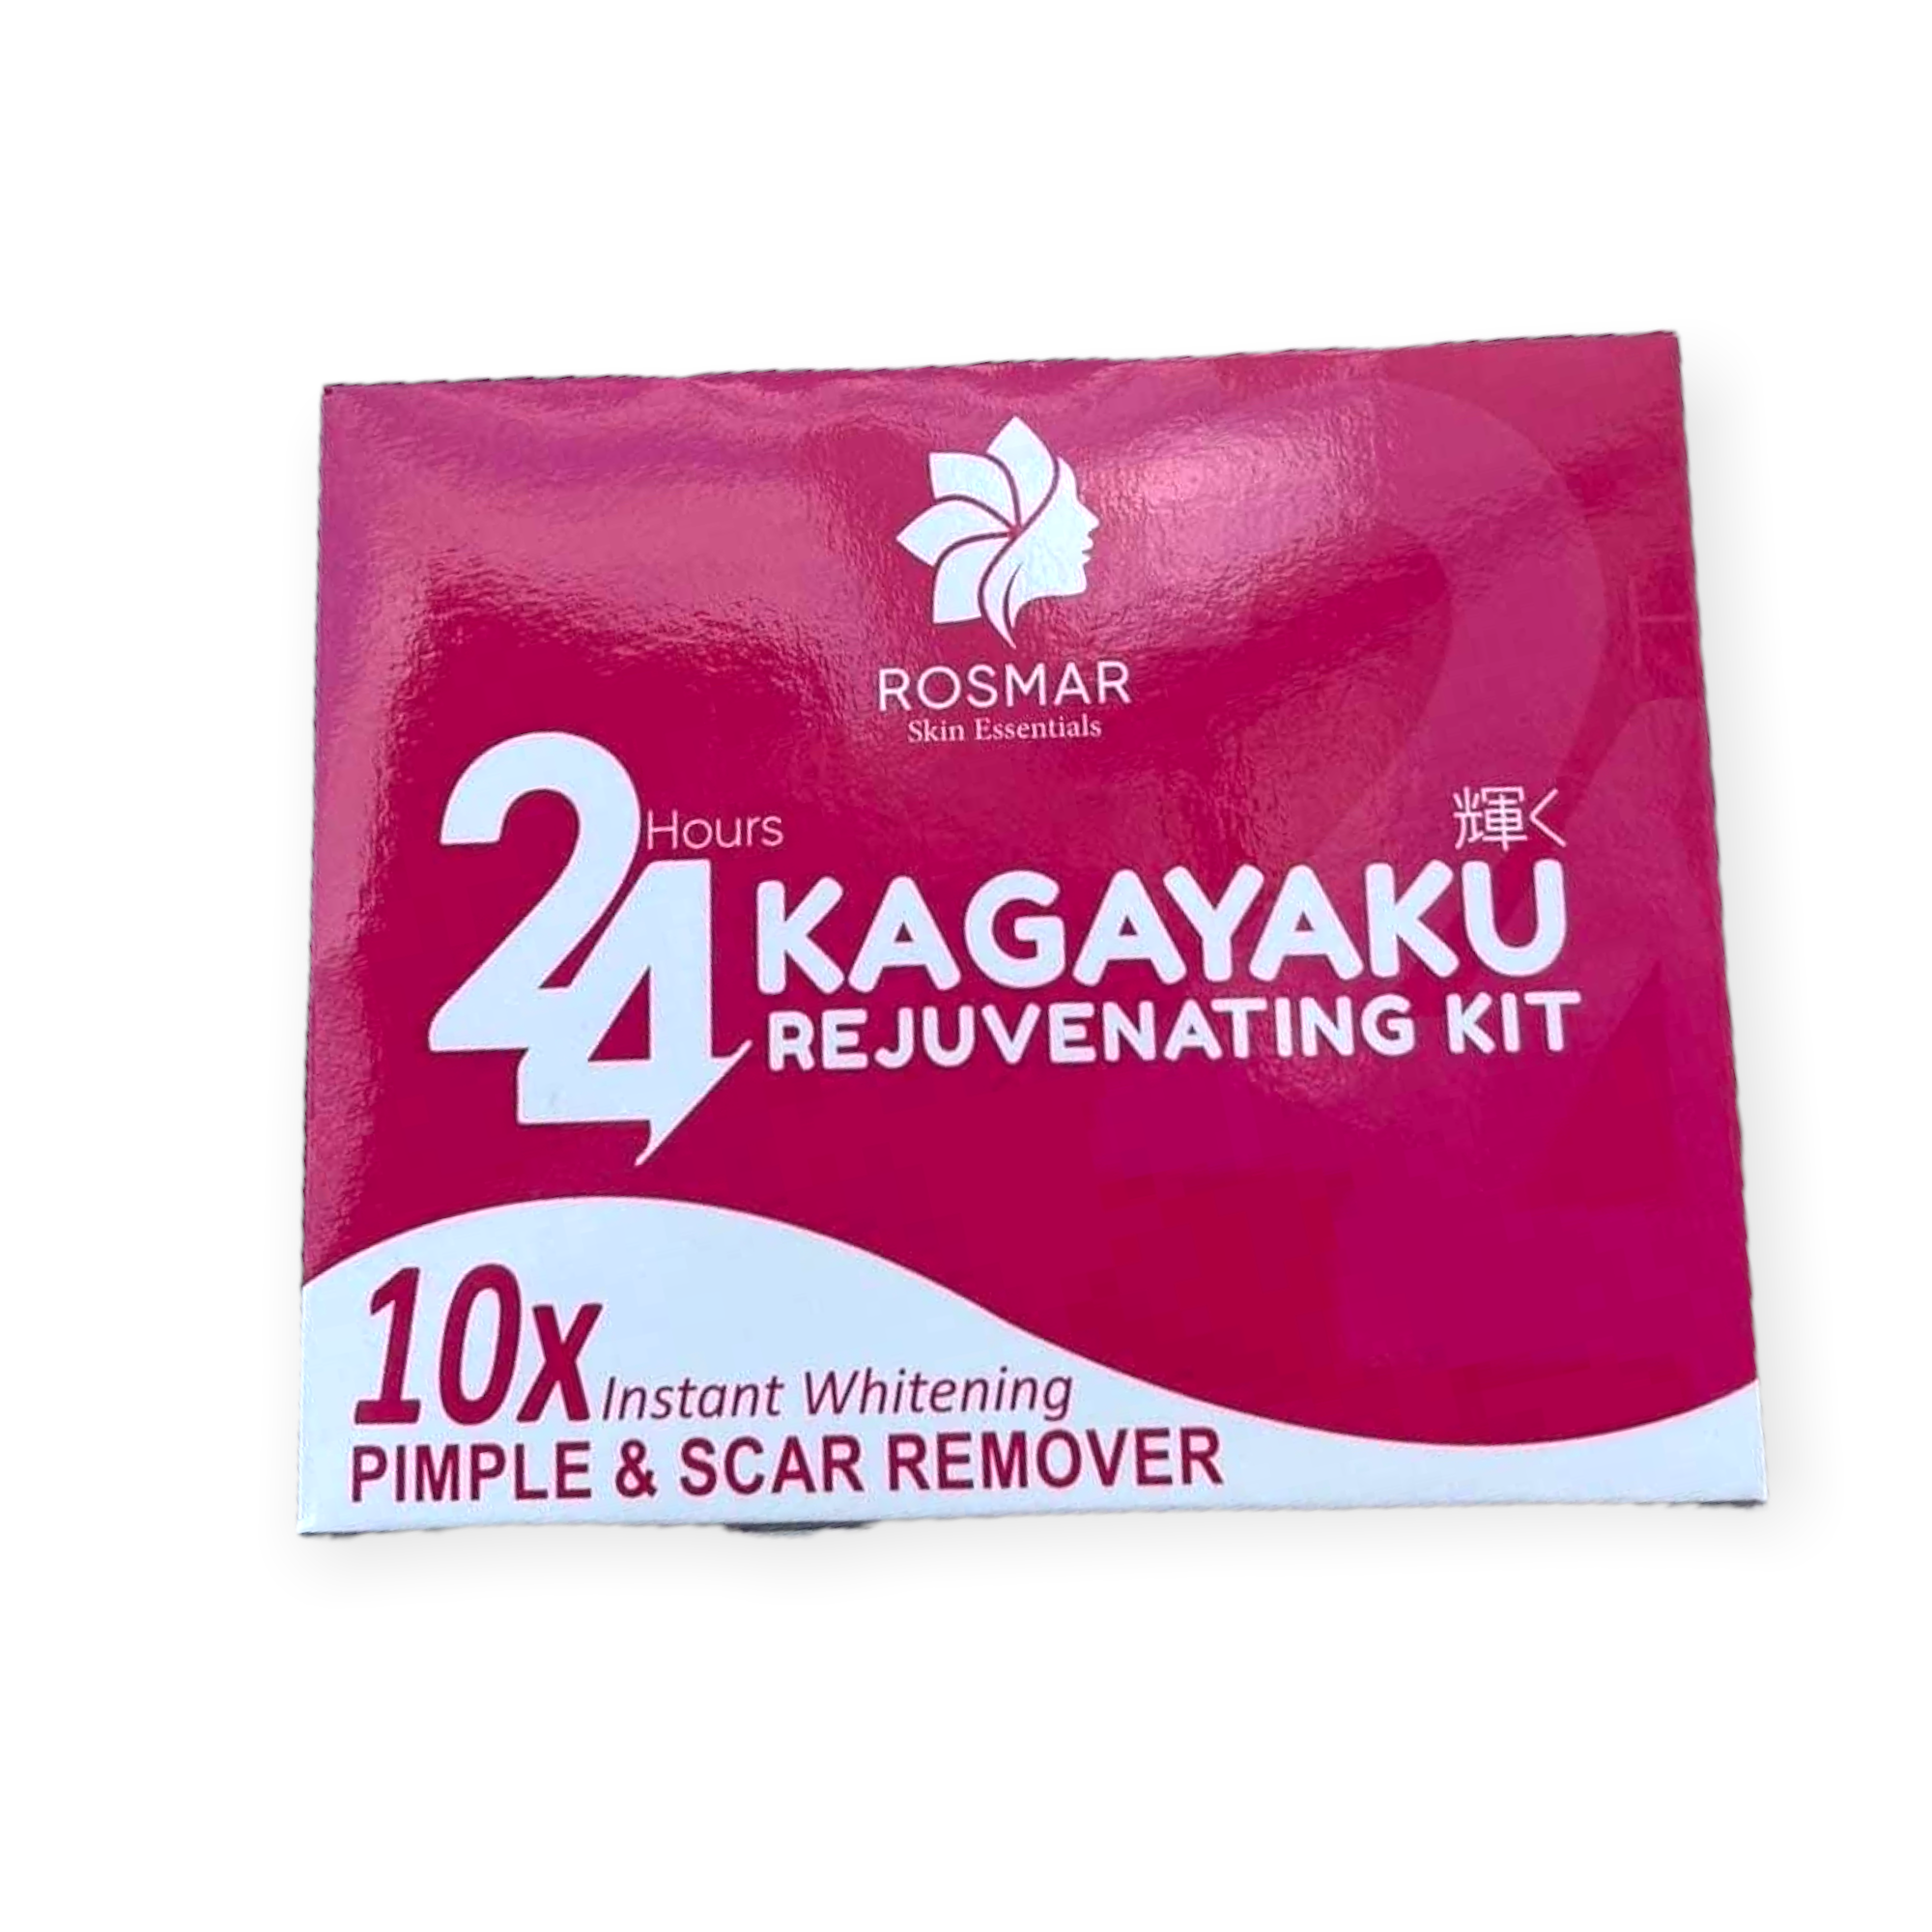 Rosmar 24 Hour Kagayaku Rejuvenating Kit – My Care Kits